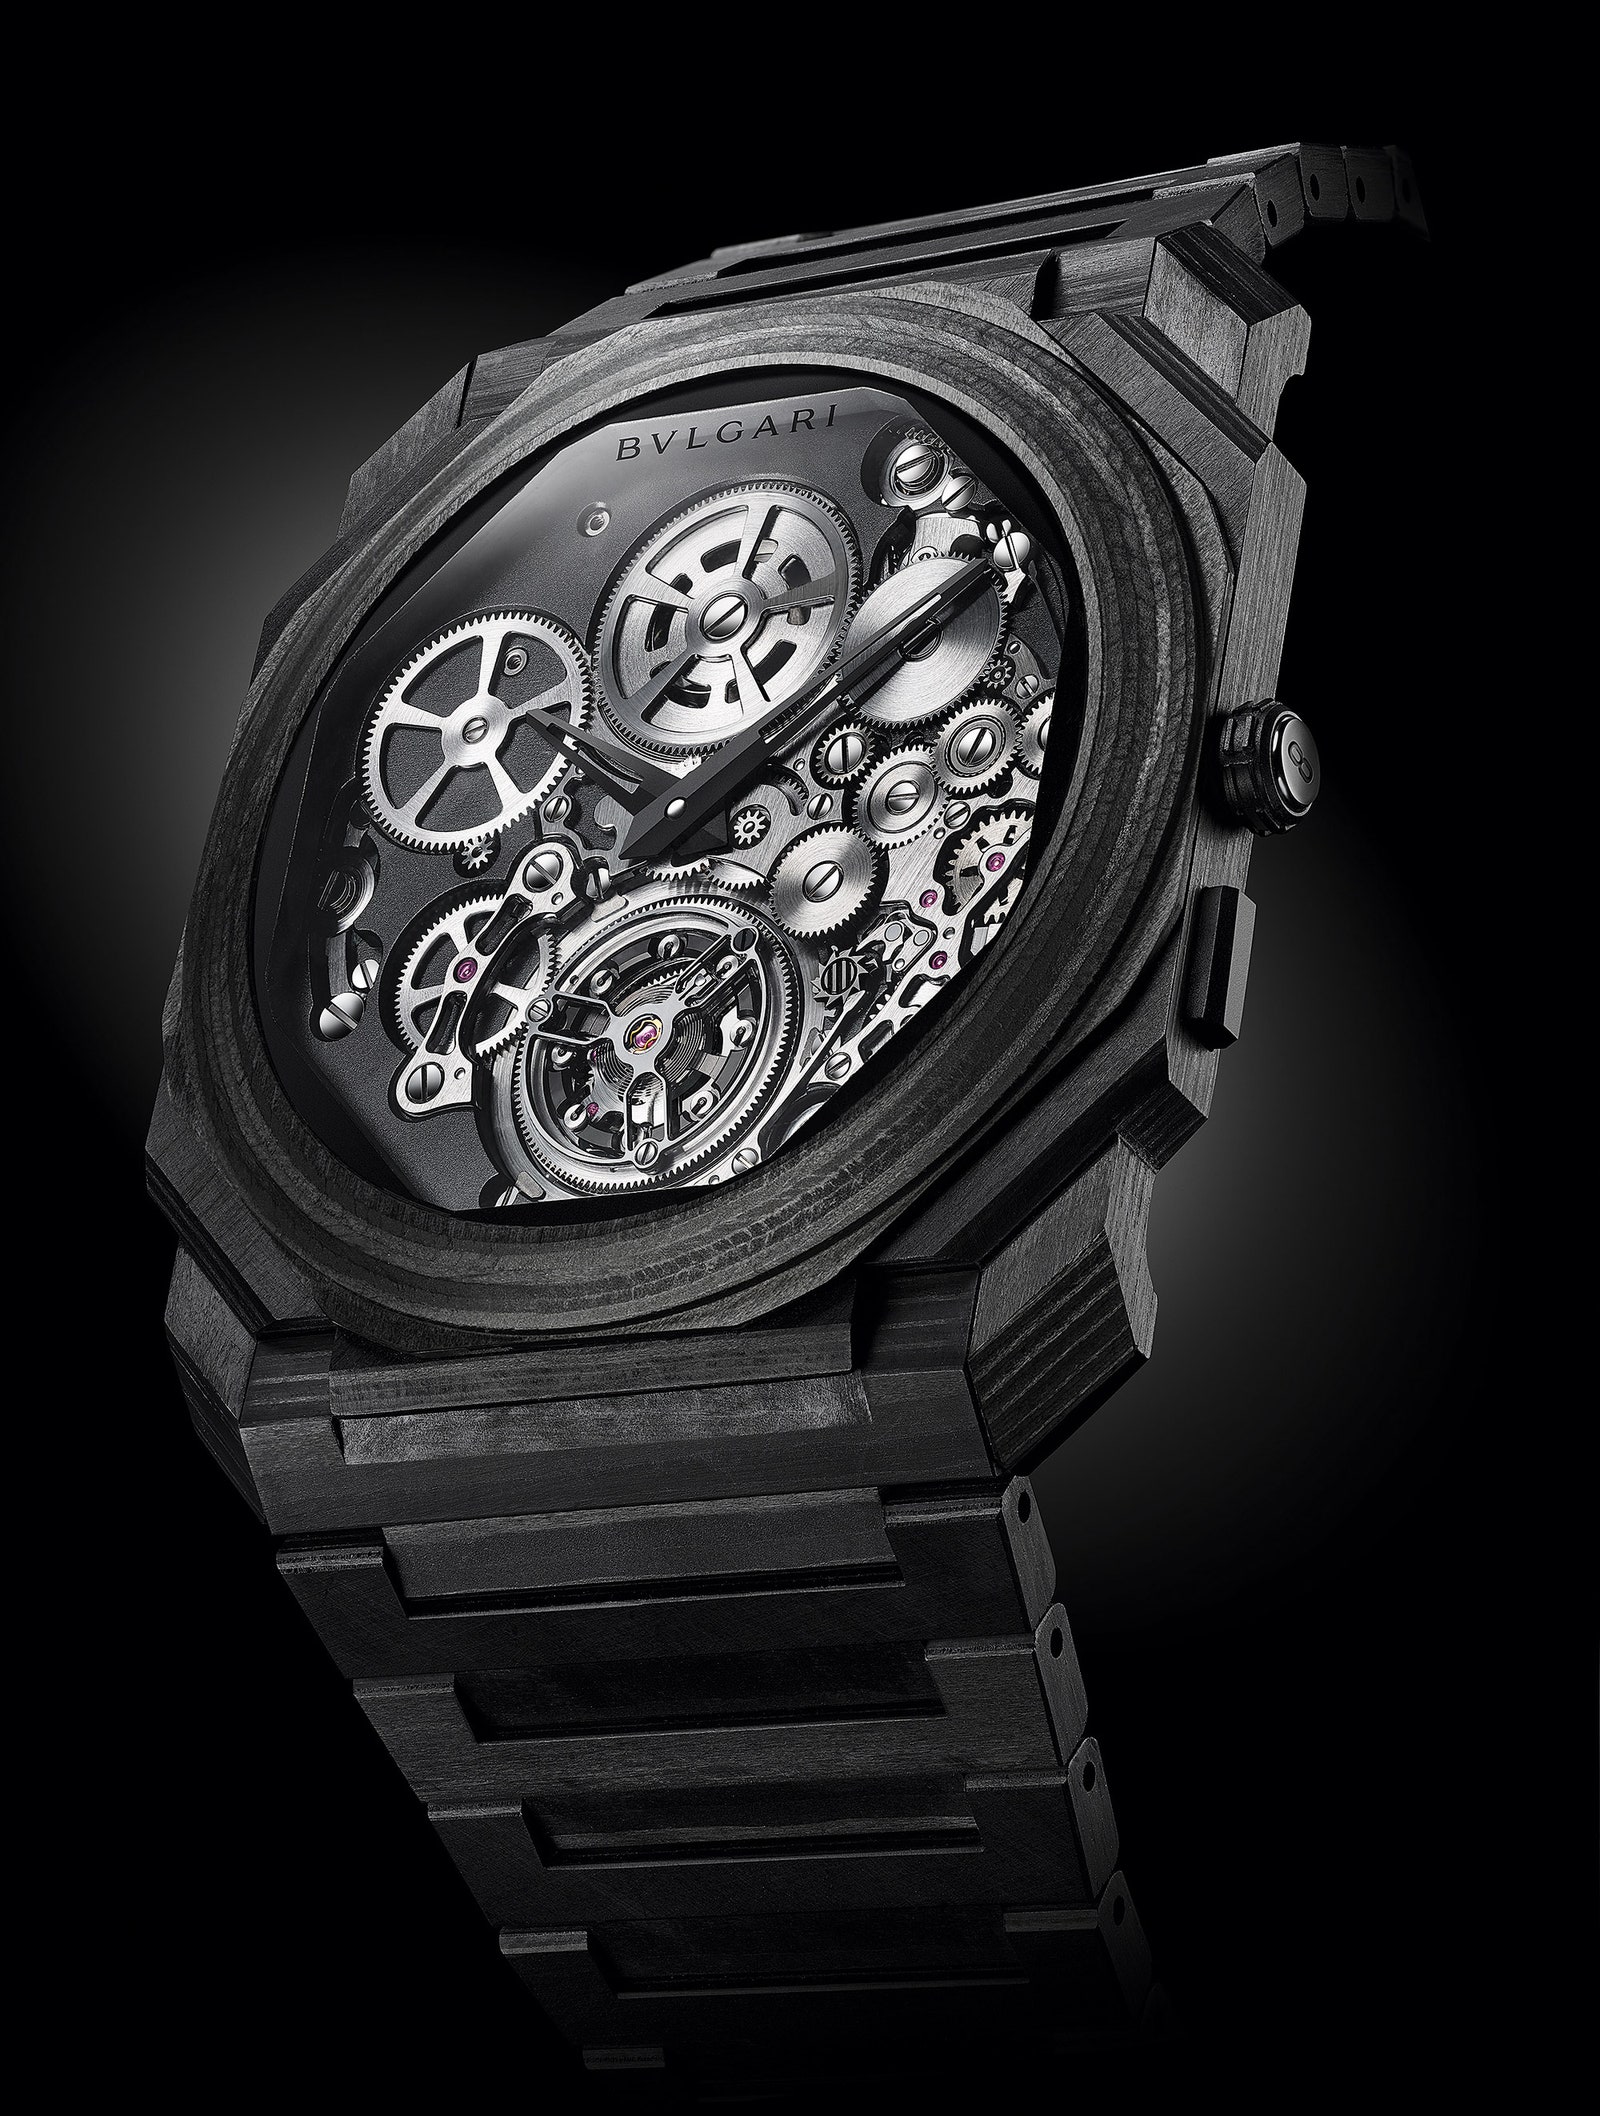 Автоматические часы с турбийоном Octo Finissimo Tourbillon Automatic Bvlgari — рекордно тонкие в мире.